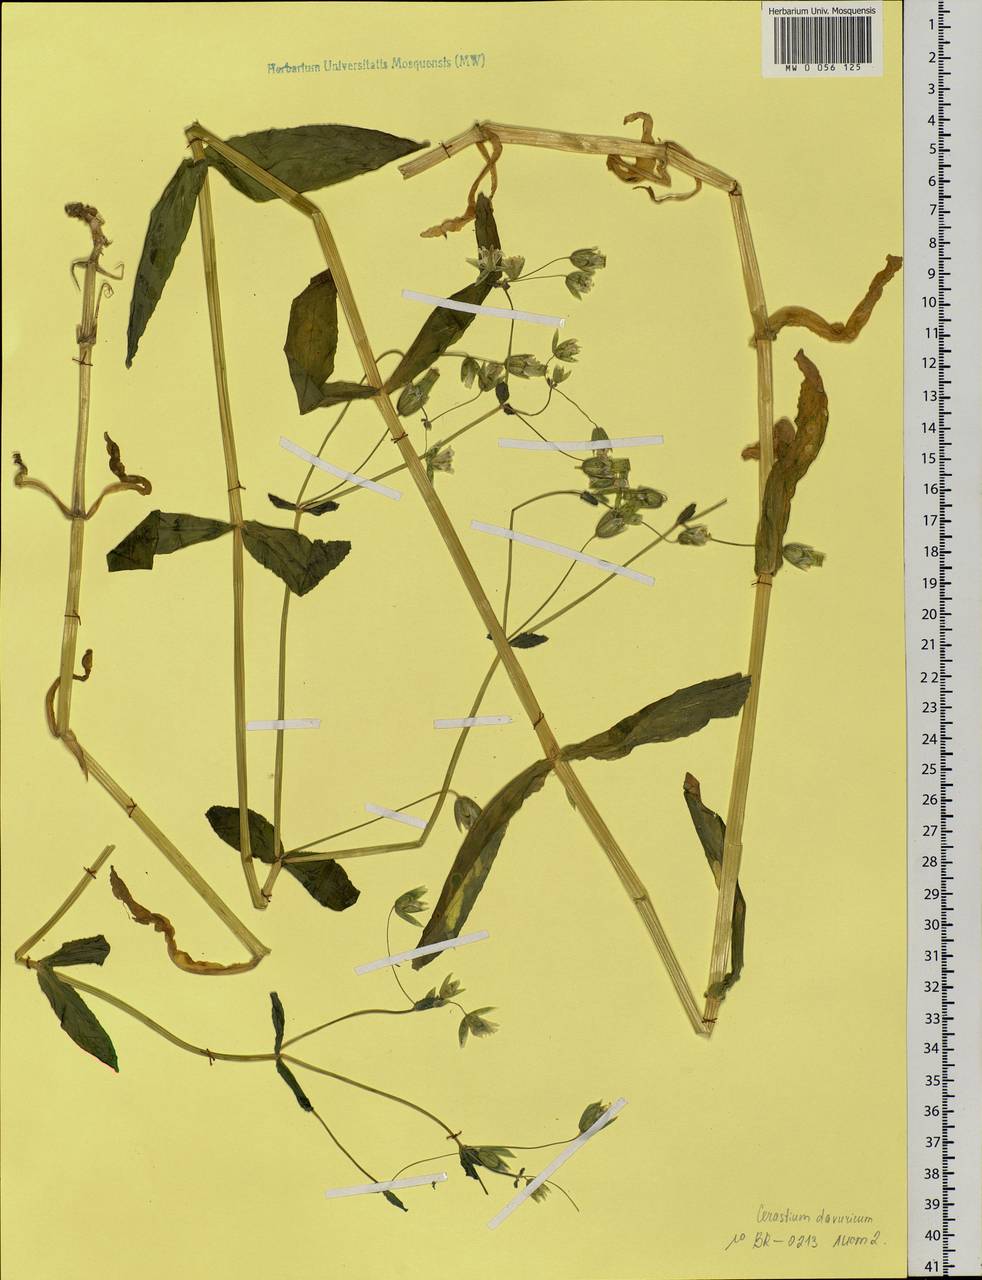 Dichodon davuricum (Fisch. ex Spreng.) Á. Löve & D. Löve, Сибирь, Прибайкалье и Забайкалье (S4) (Россия)